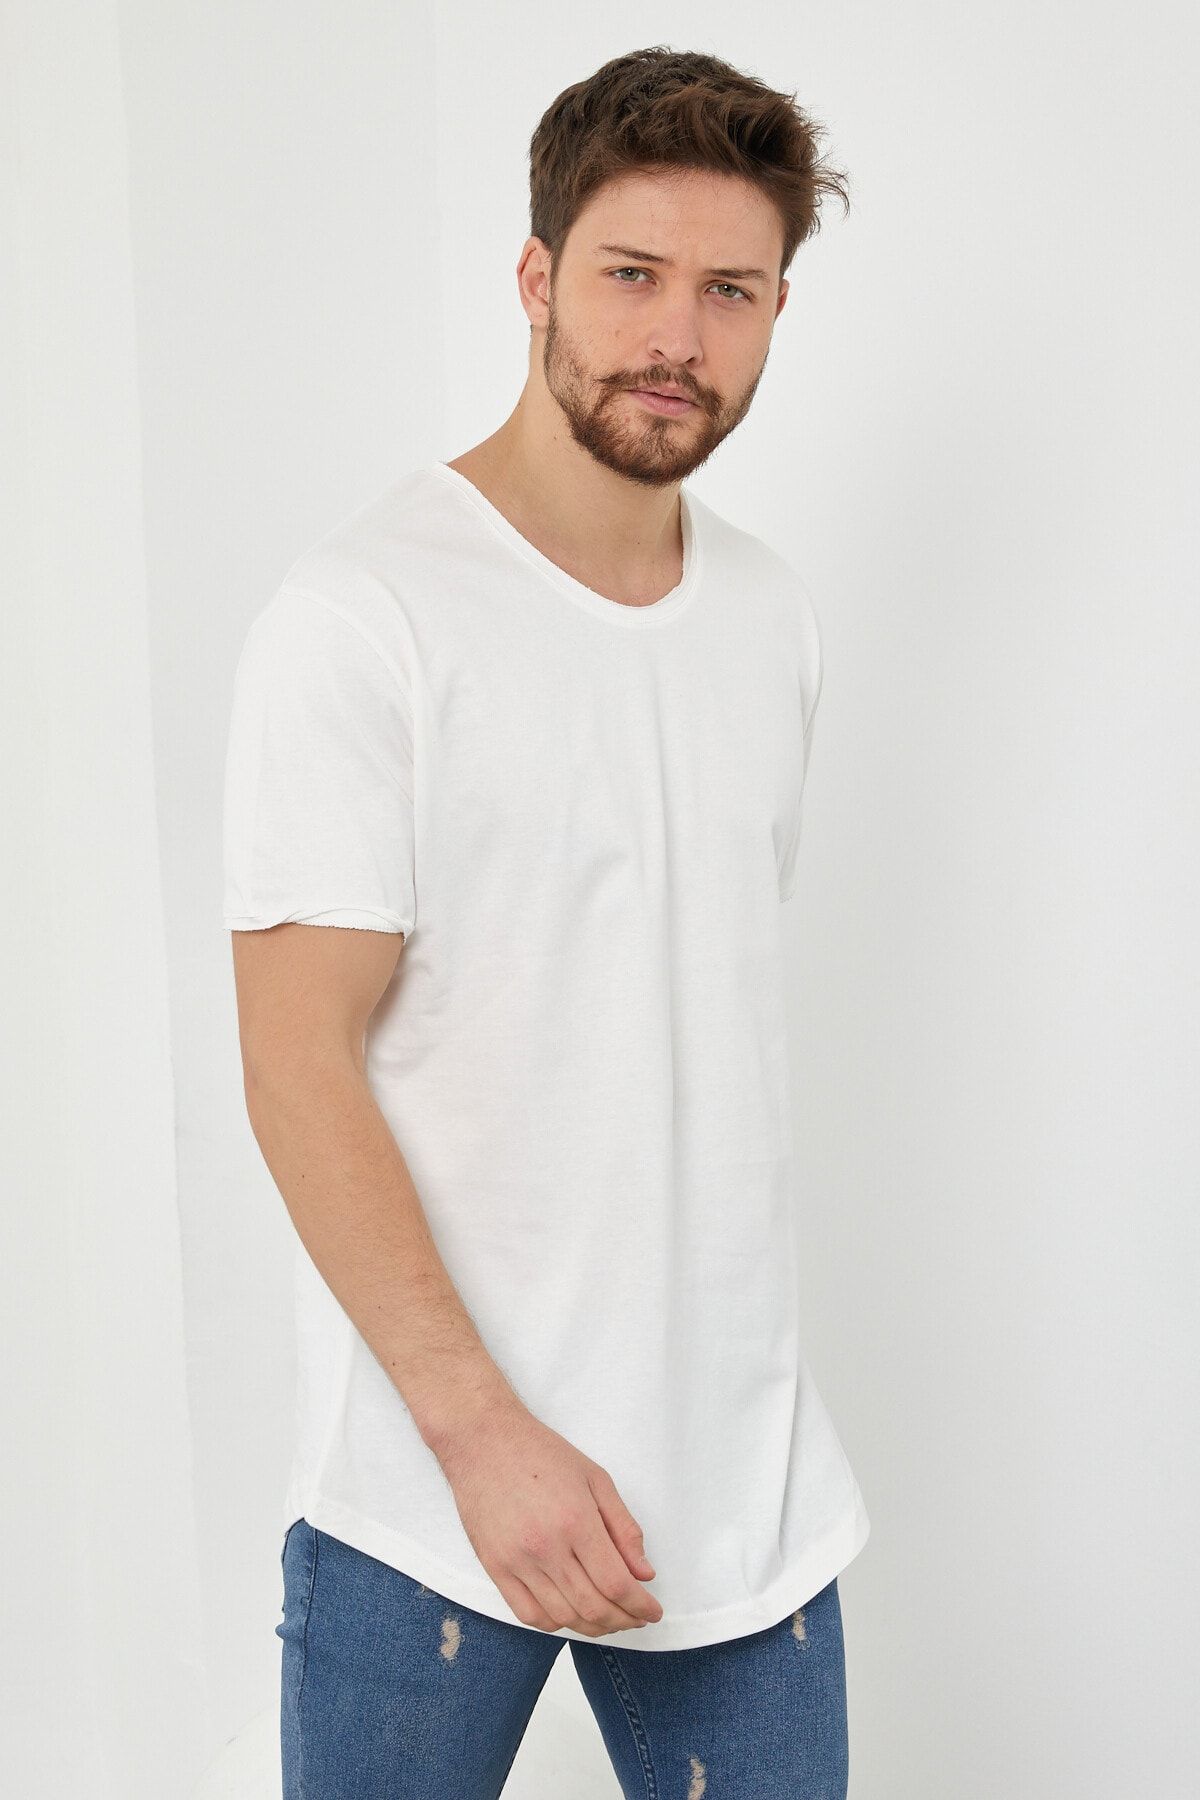 Tarz Cool Erkek Kırık Beyaz Pis Yaka Salaş T-shirt-tcps001r56s